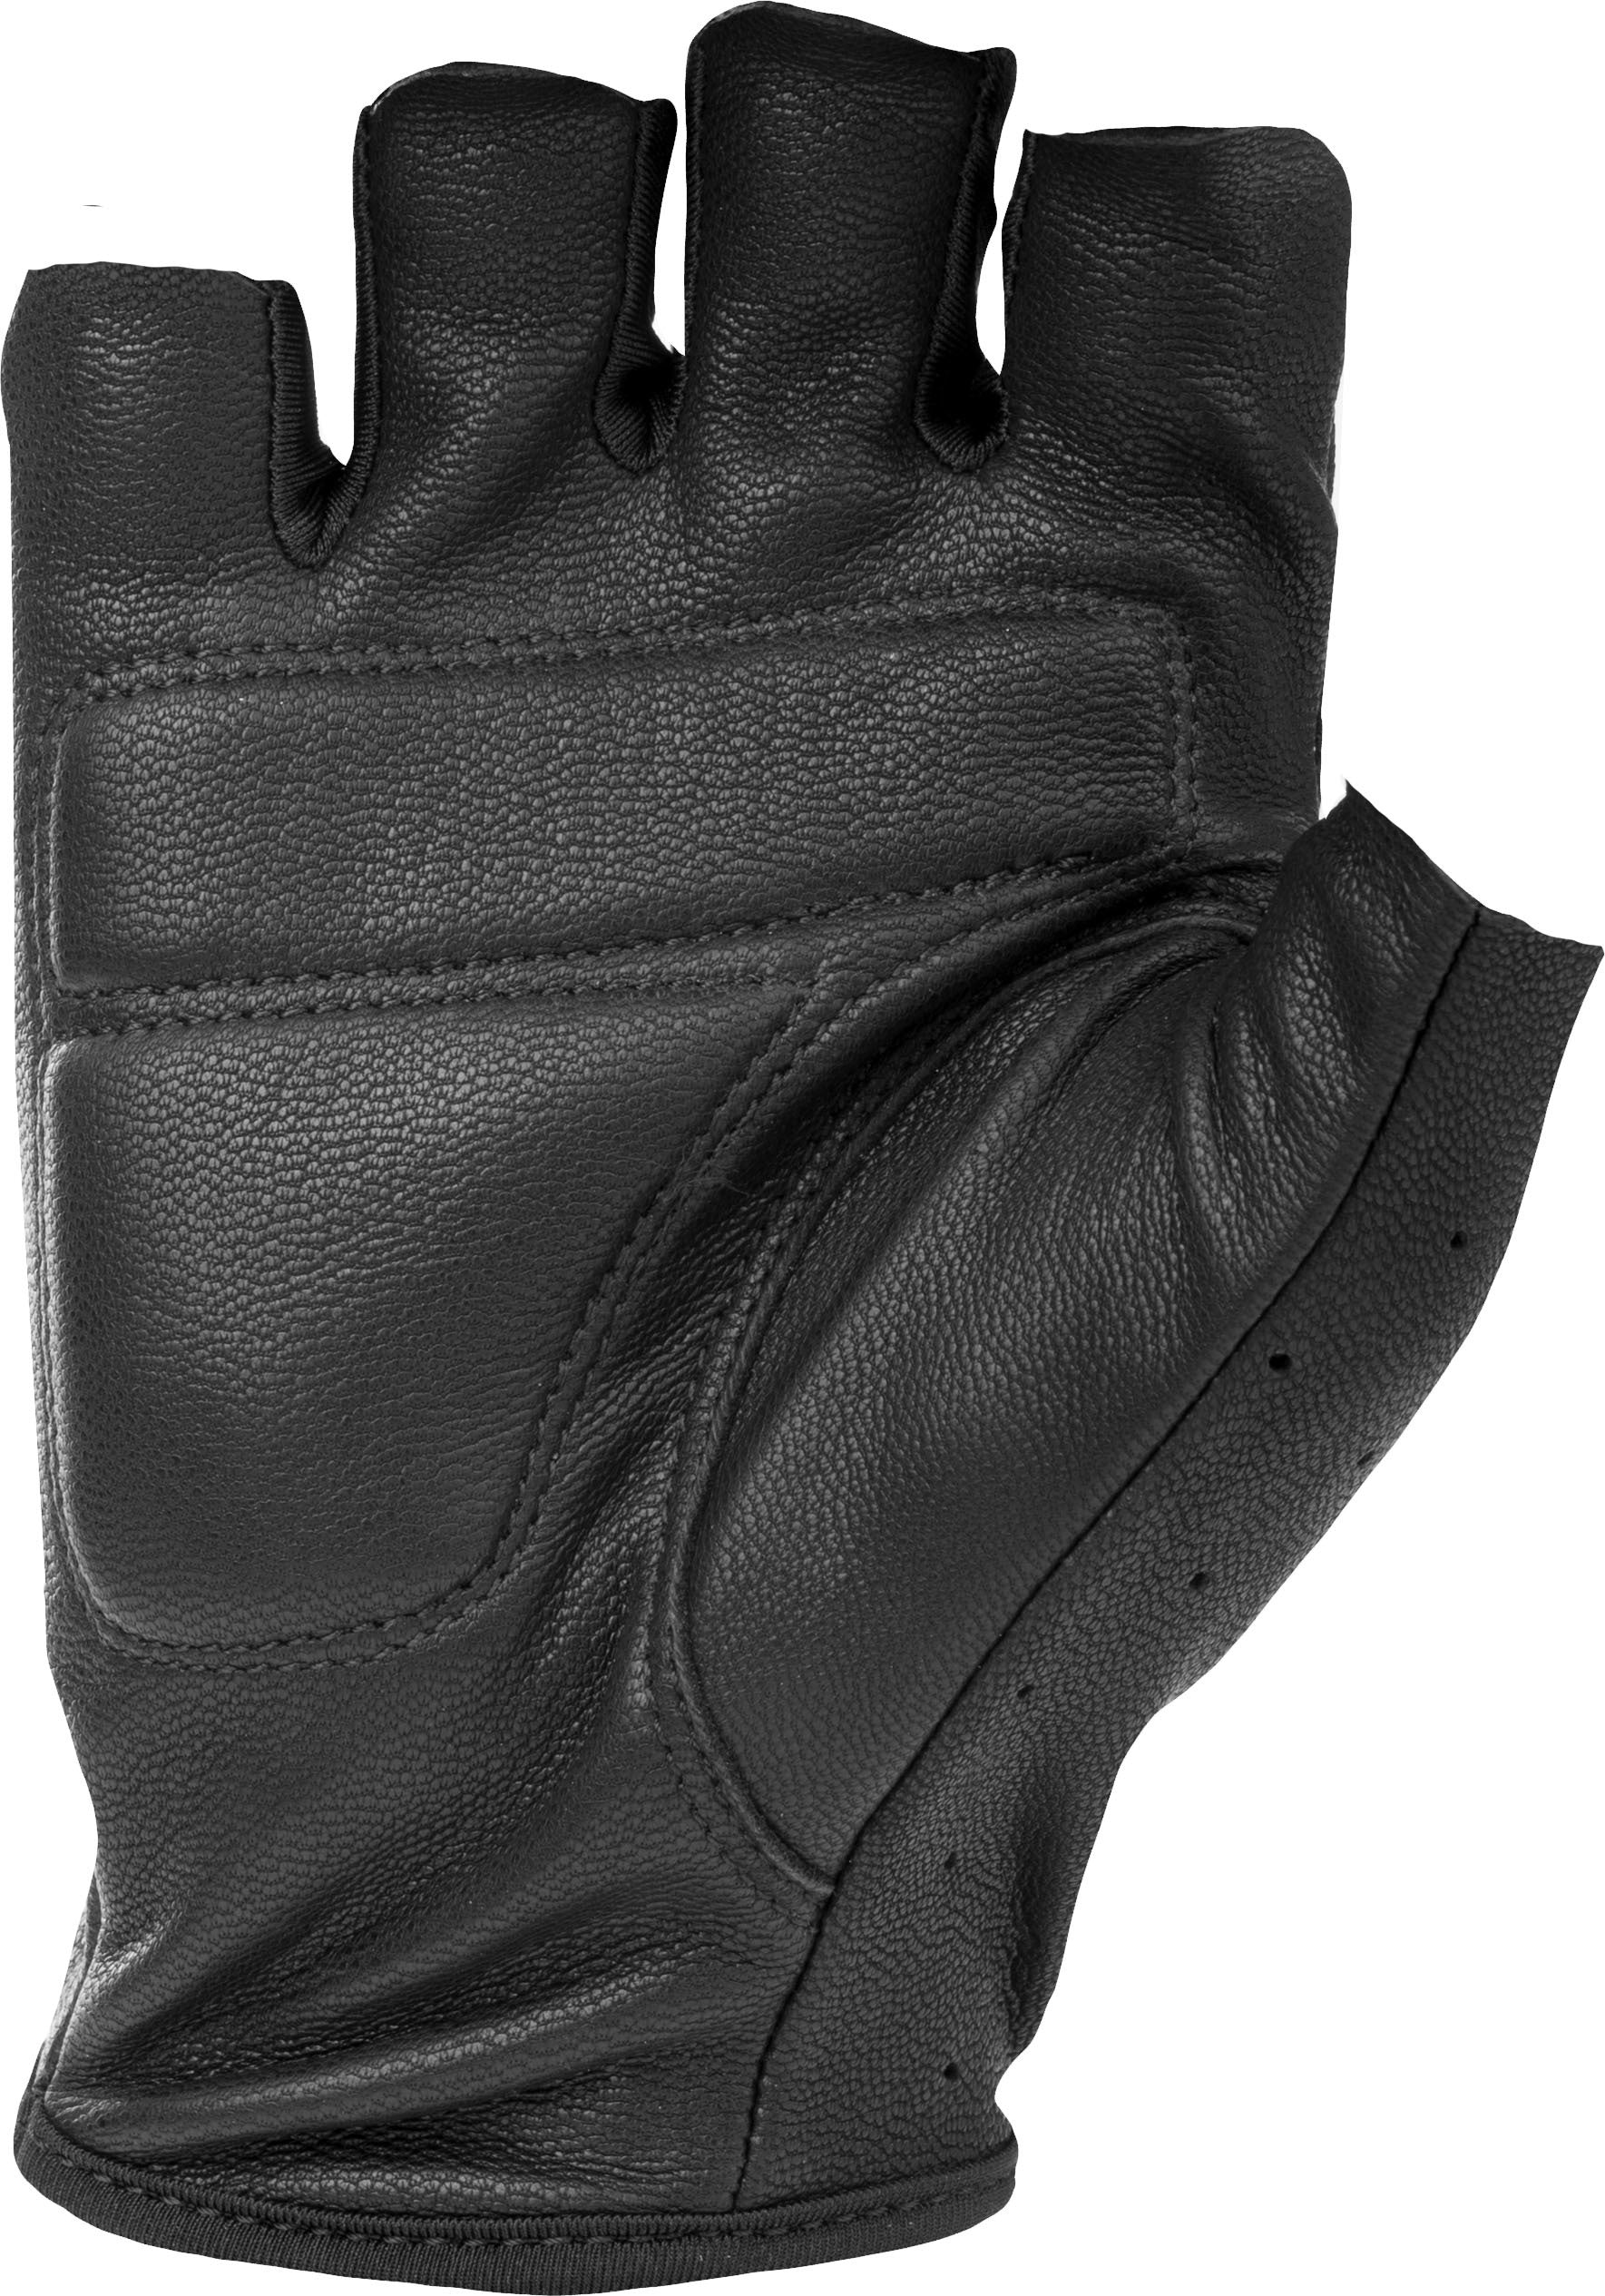 Ranger Gloves Black 2x